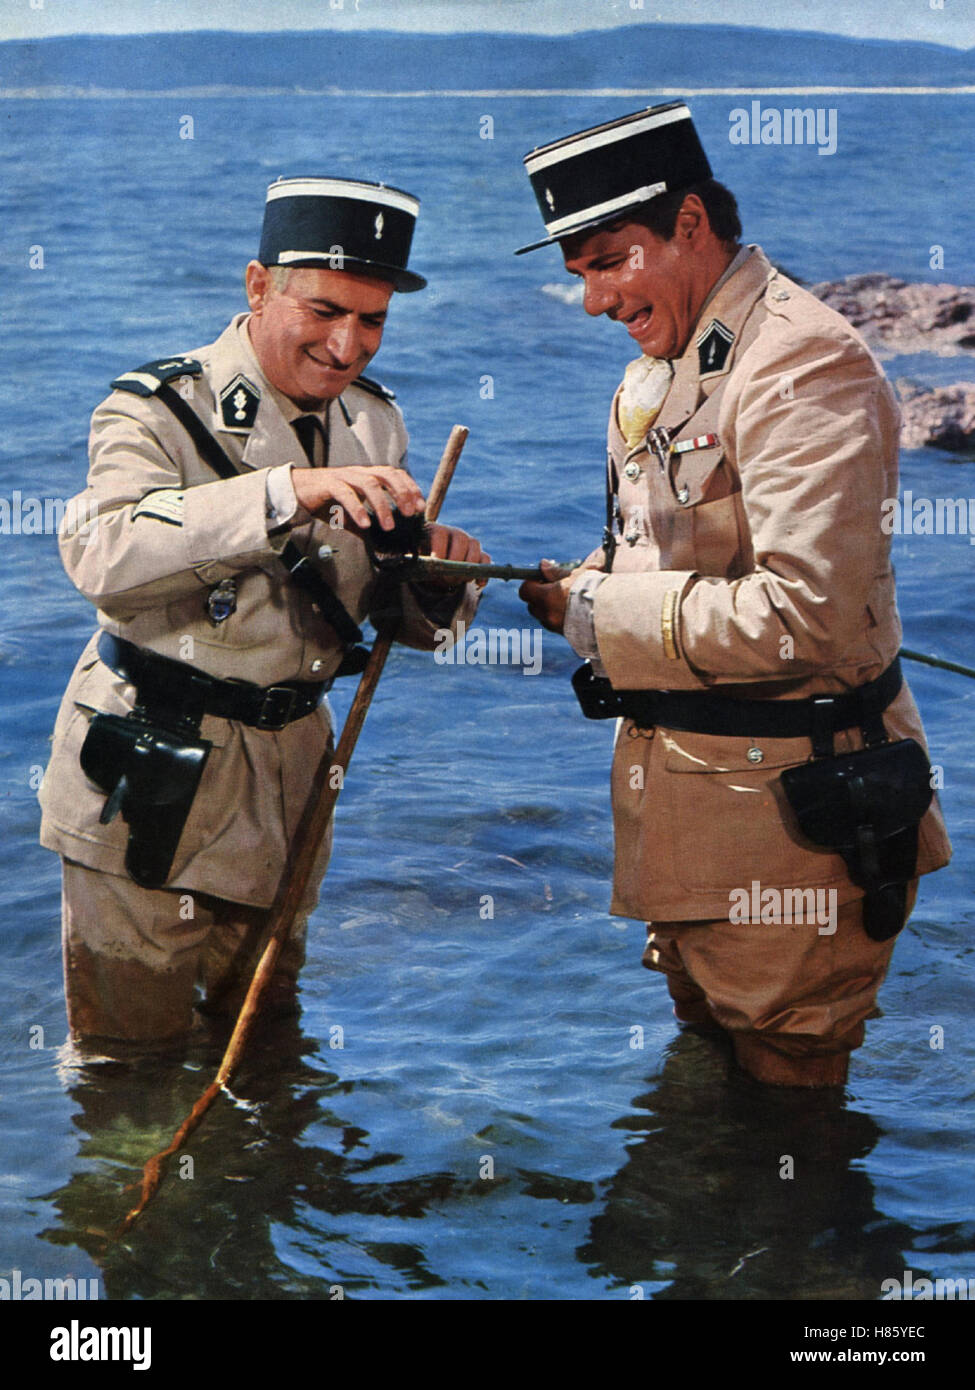 Der Gendarm von St. Tropez, (LE GENDARME DE SAINT-TROPEZ) F 1964, Regie: Jean Girault, LOUIS DE FUNES, MICHEL GALABRU, Stichwort: Wasser, Meer, Polizist, Flic Stock Photo